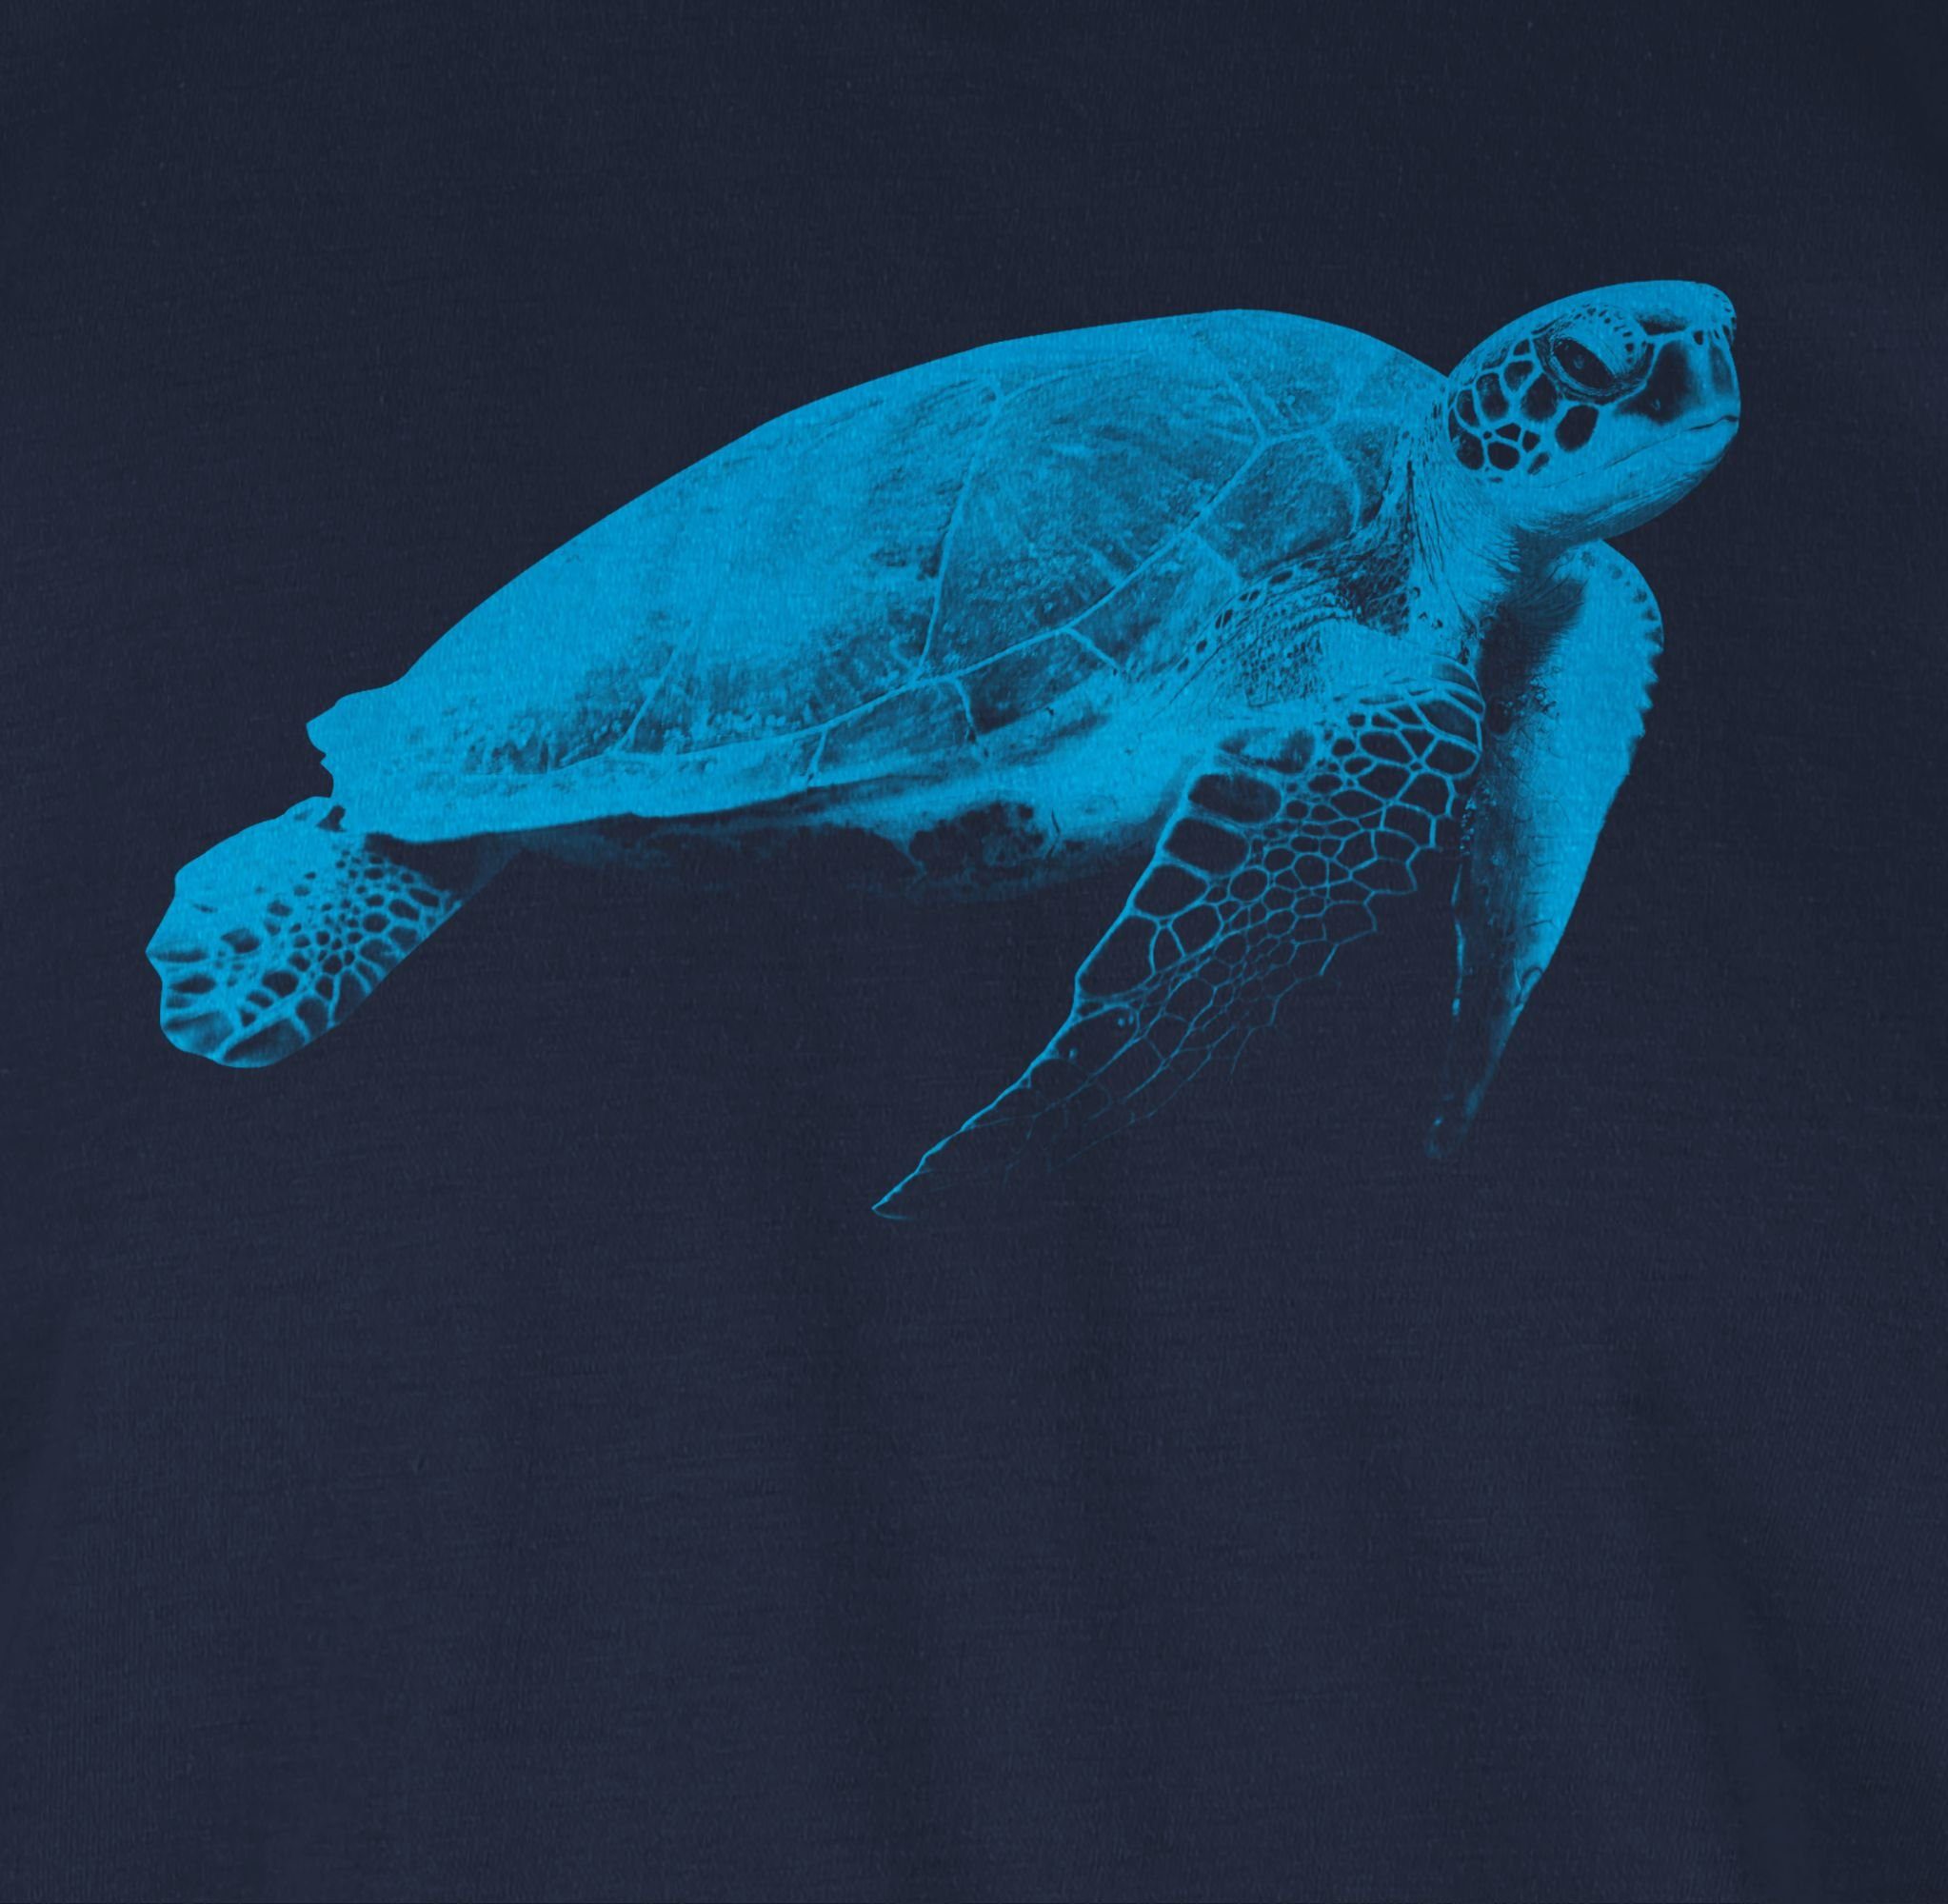 Shirtracer T-Shirt Wasserschildkröte Tiere Zubehör Navy Blau 01